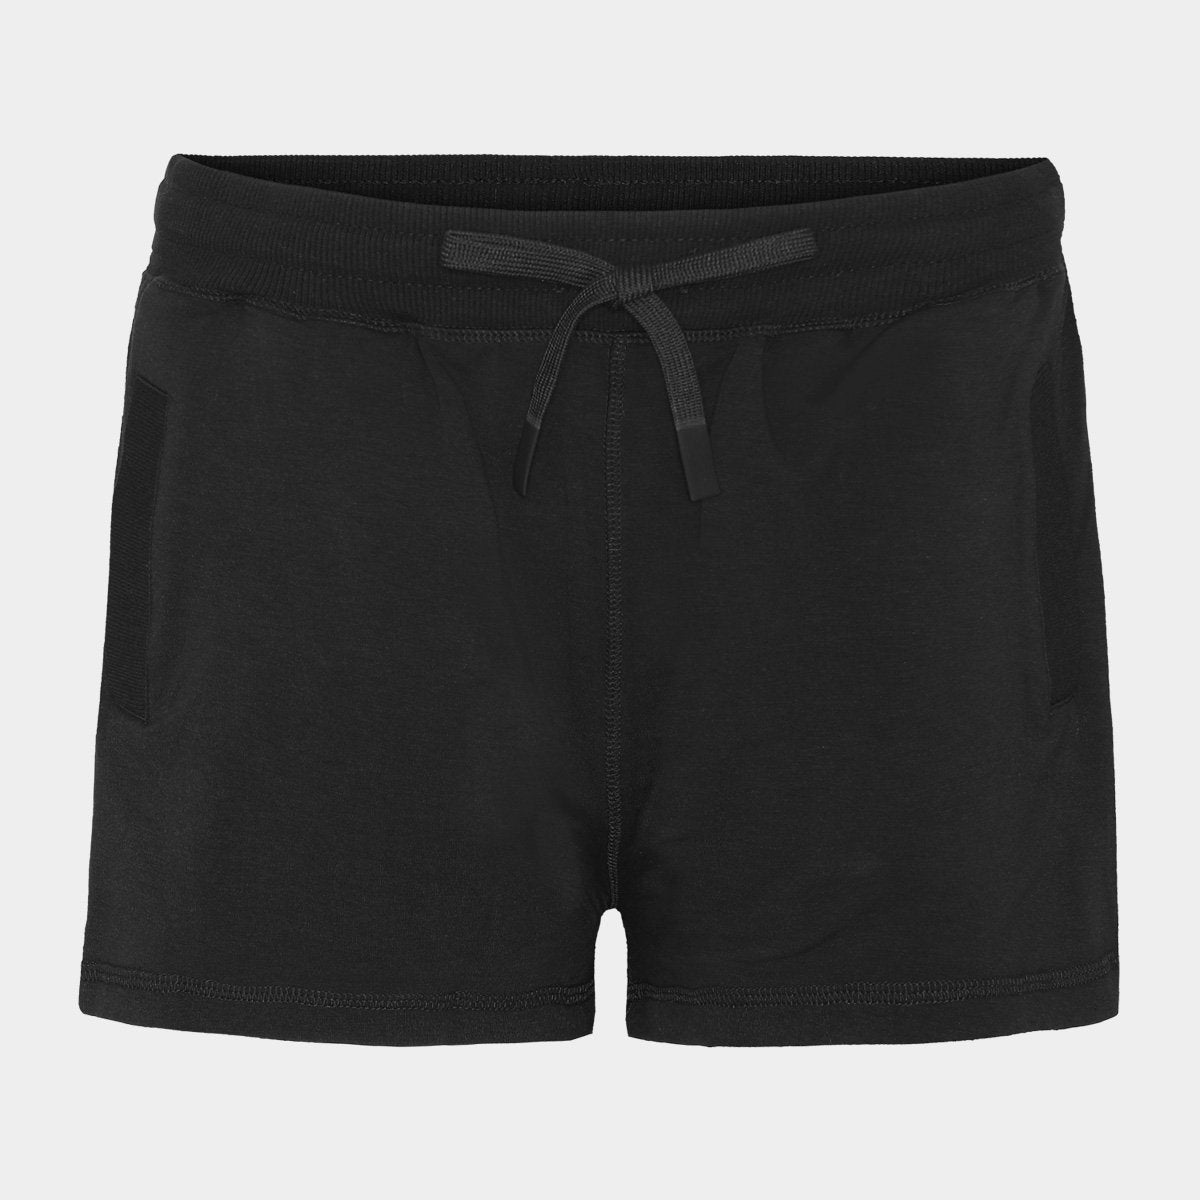 Billede af Bambus sweatshorts | sorte sweat shorts til damer fra Boody, XS